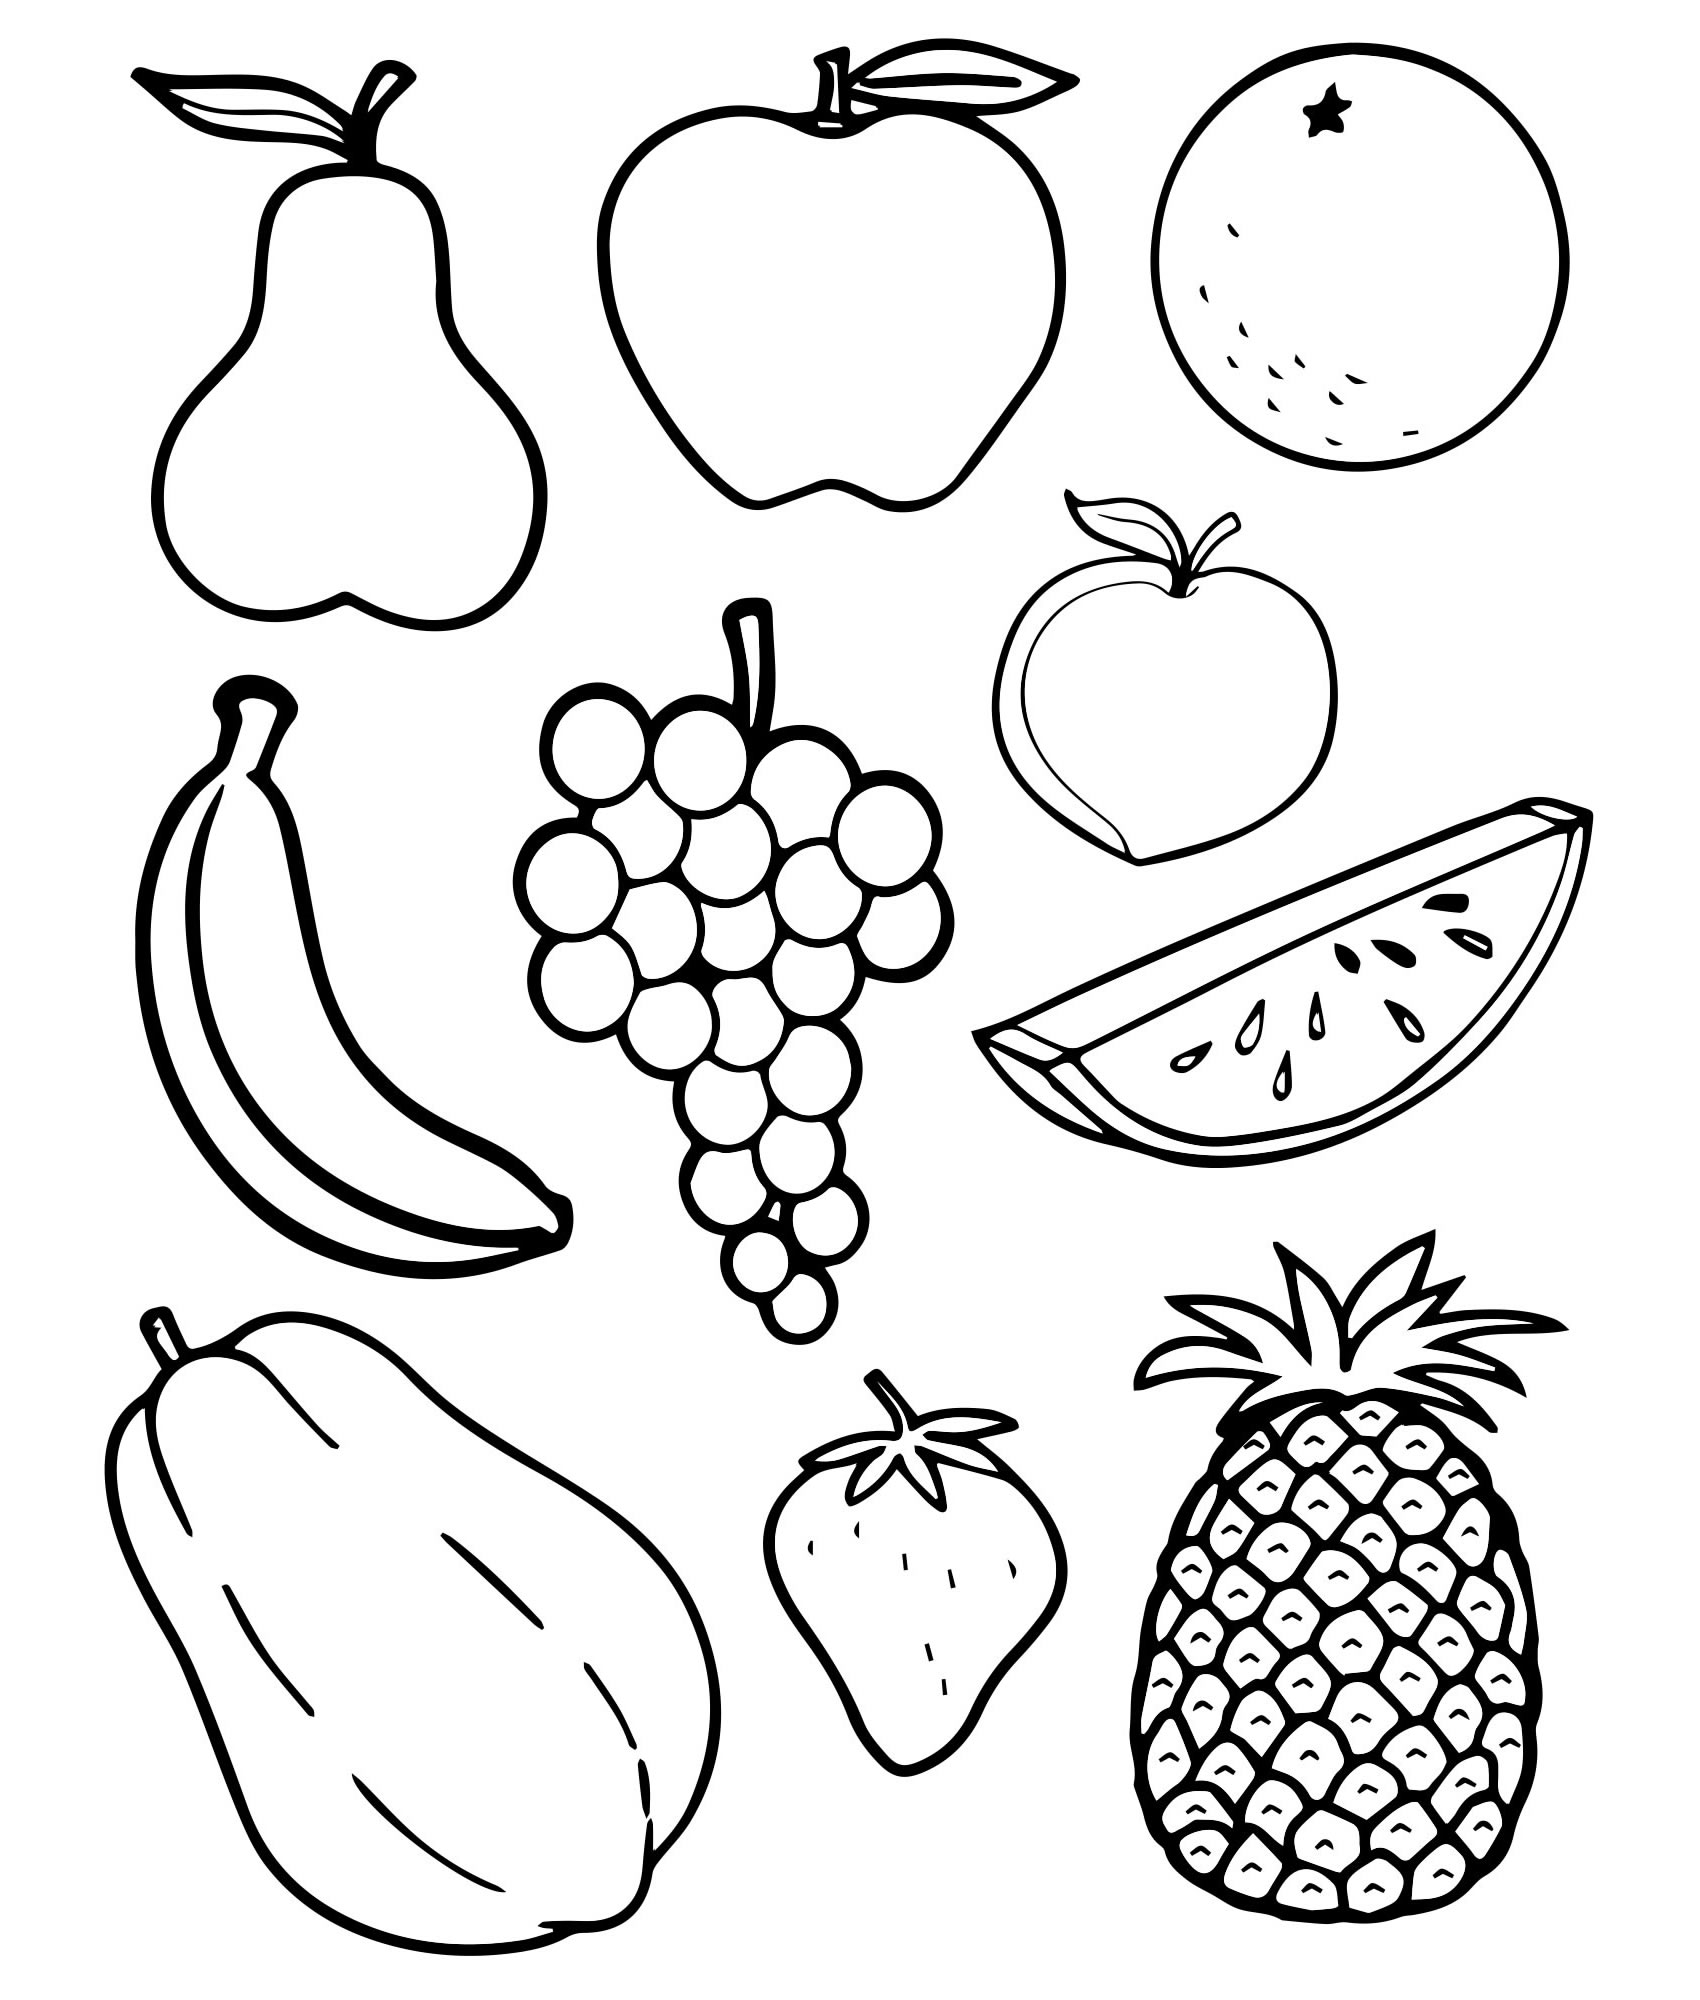 Раскраска Овощи для детей 3-4 лет онлайн и распечатать